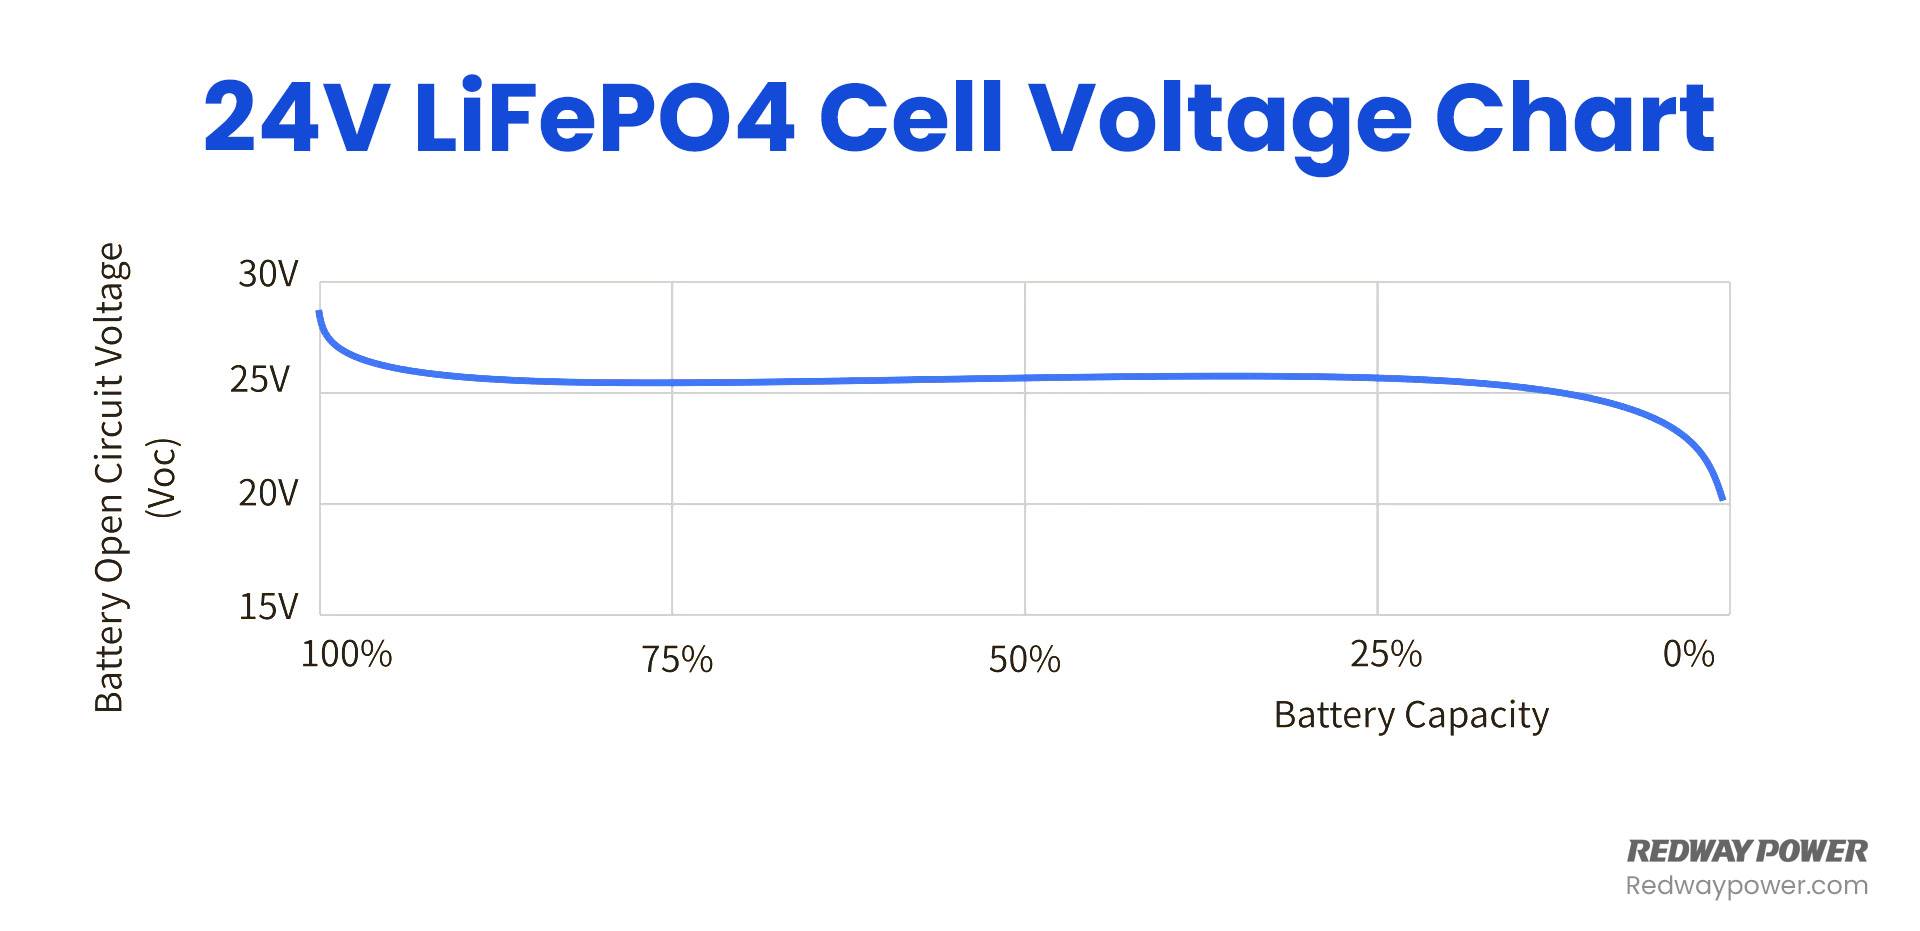 LiFePO4 Voltage Chart (3.2V, 12V, 24V 48V) Comparison, 24V LiFePO4 Cell Voltage Chart